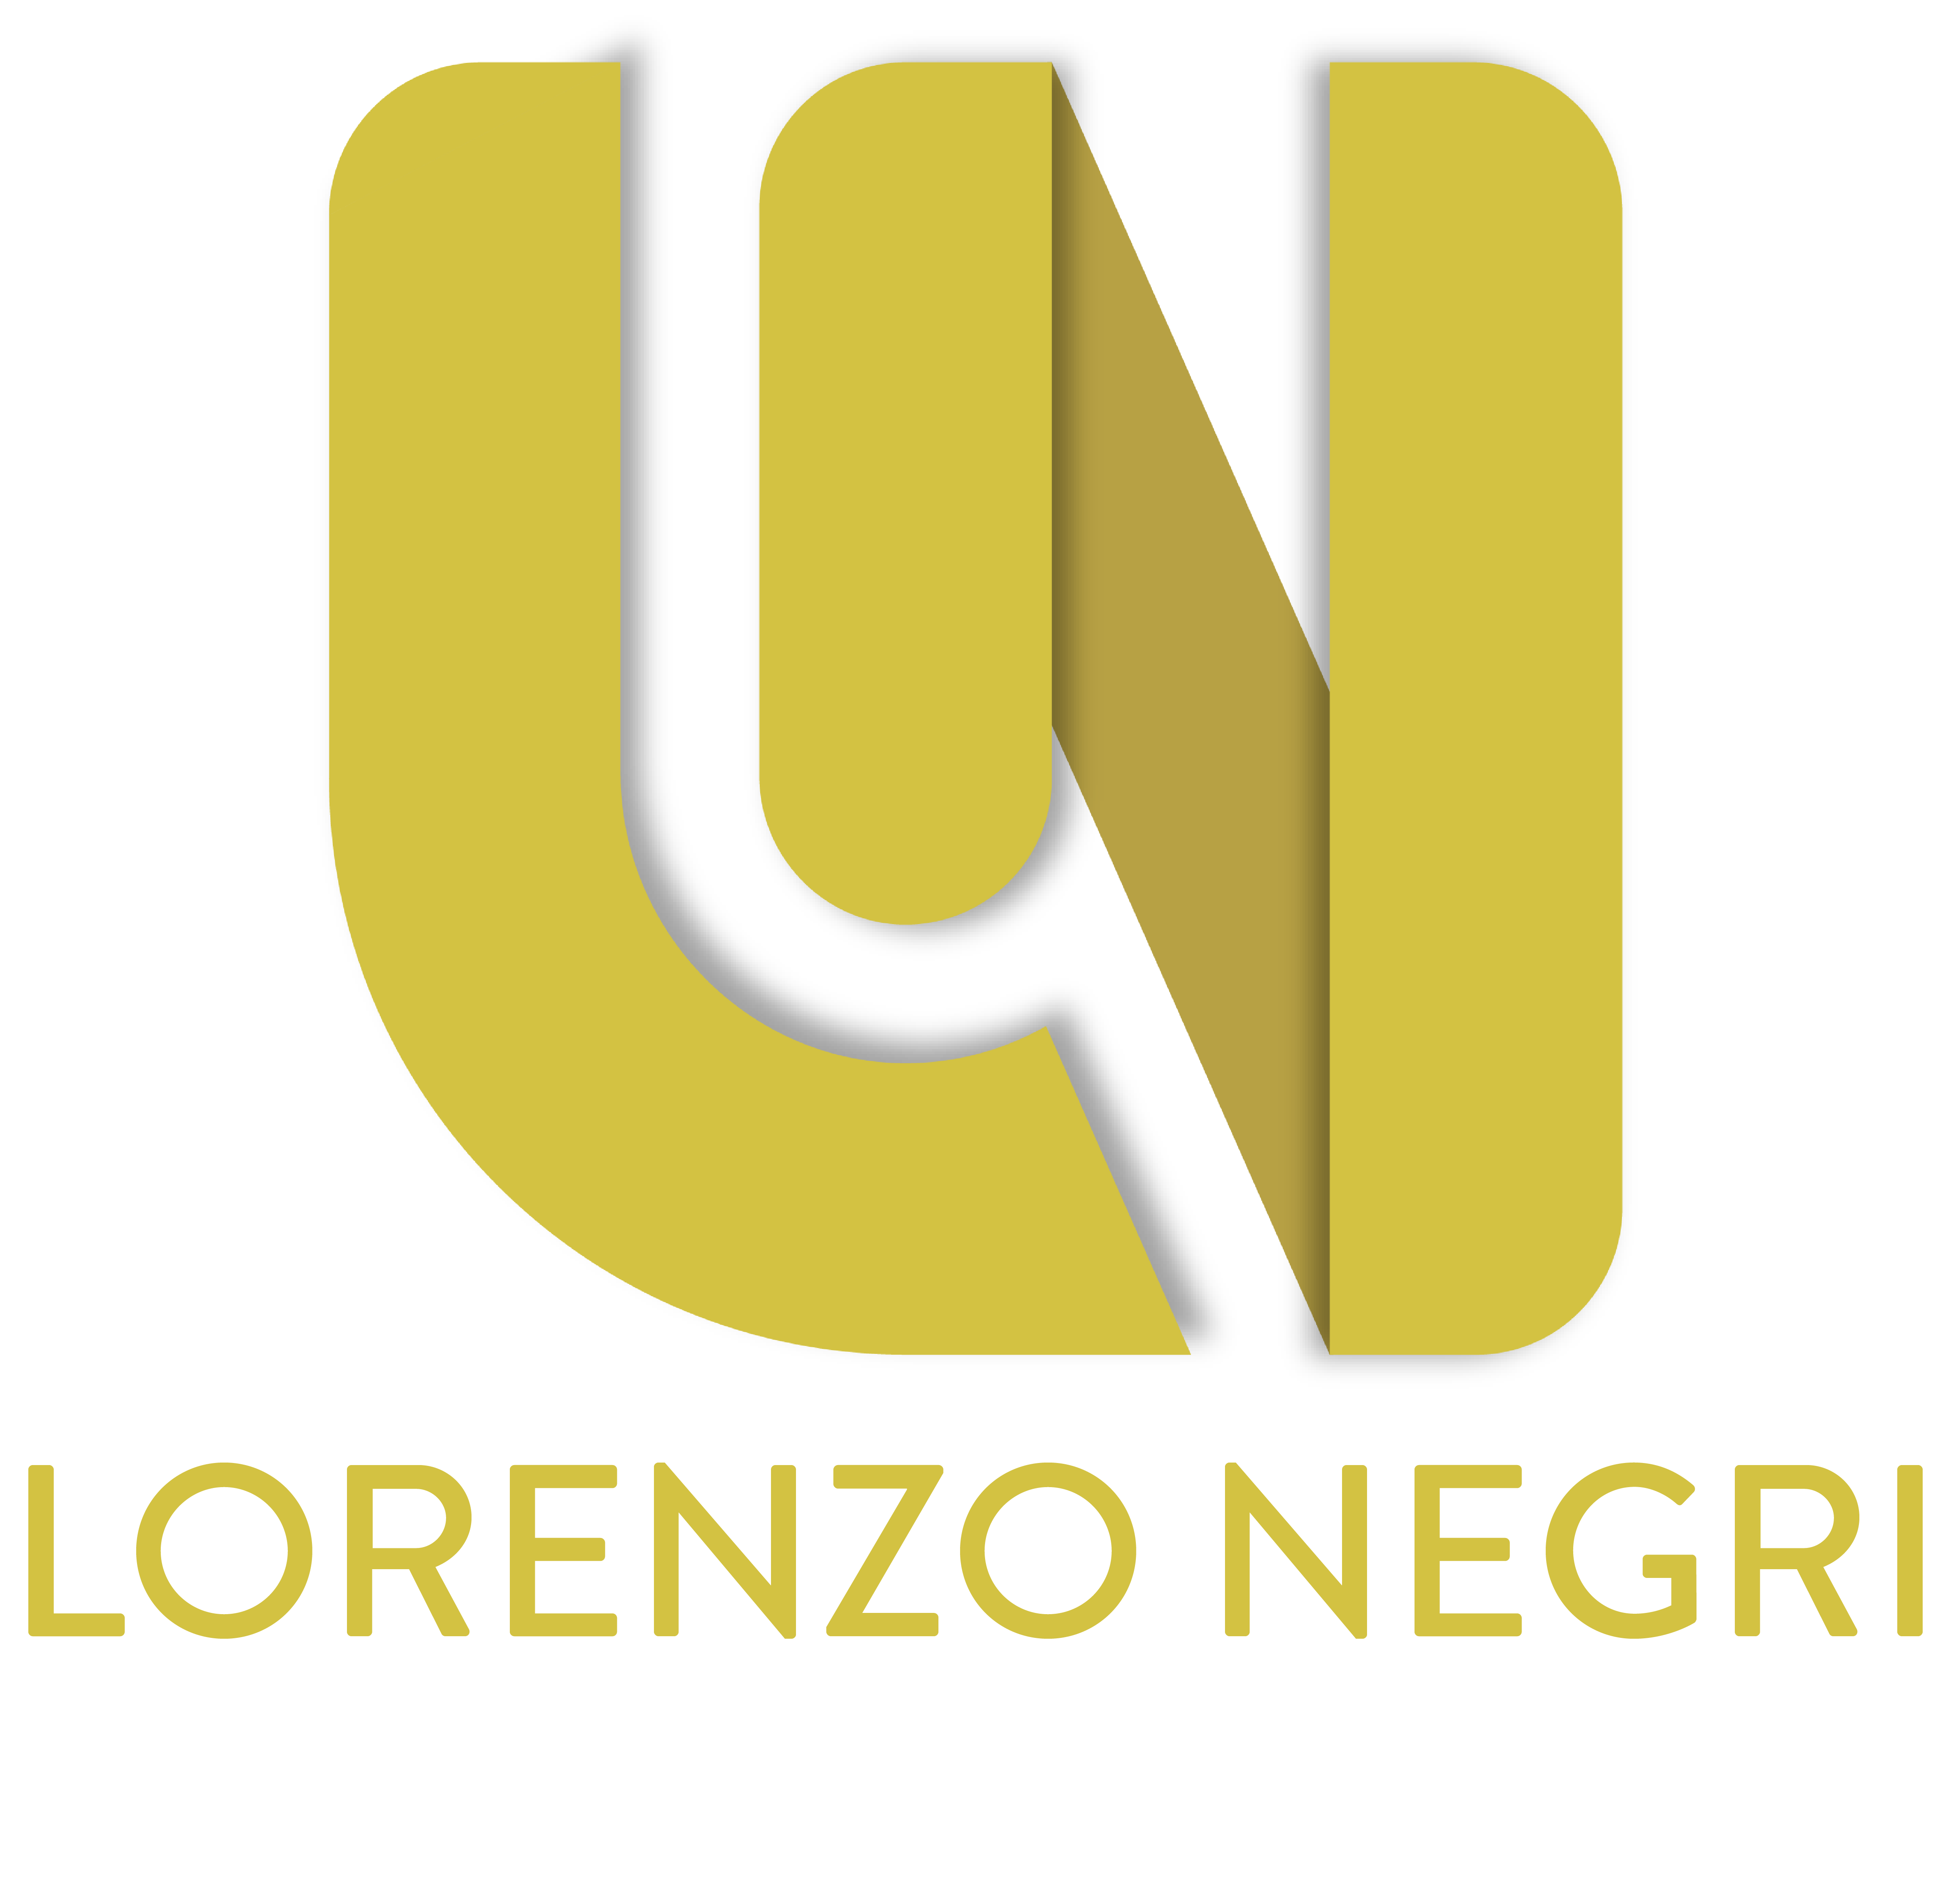 Lorenzo Negri